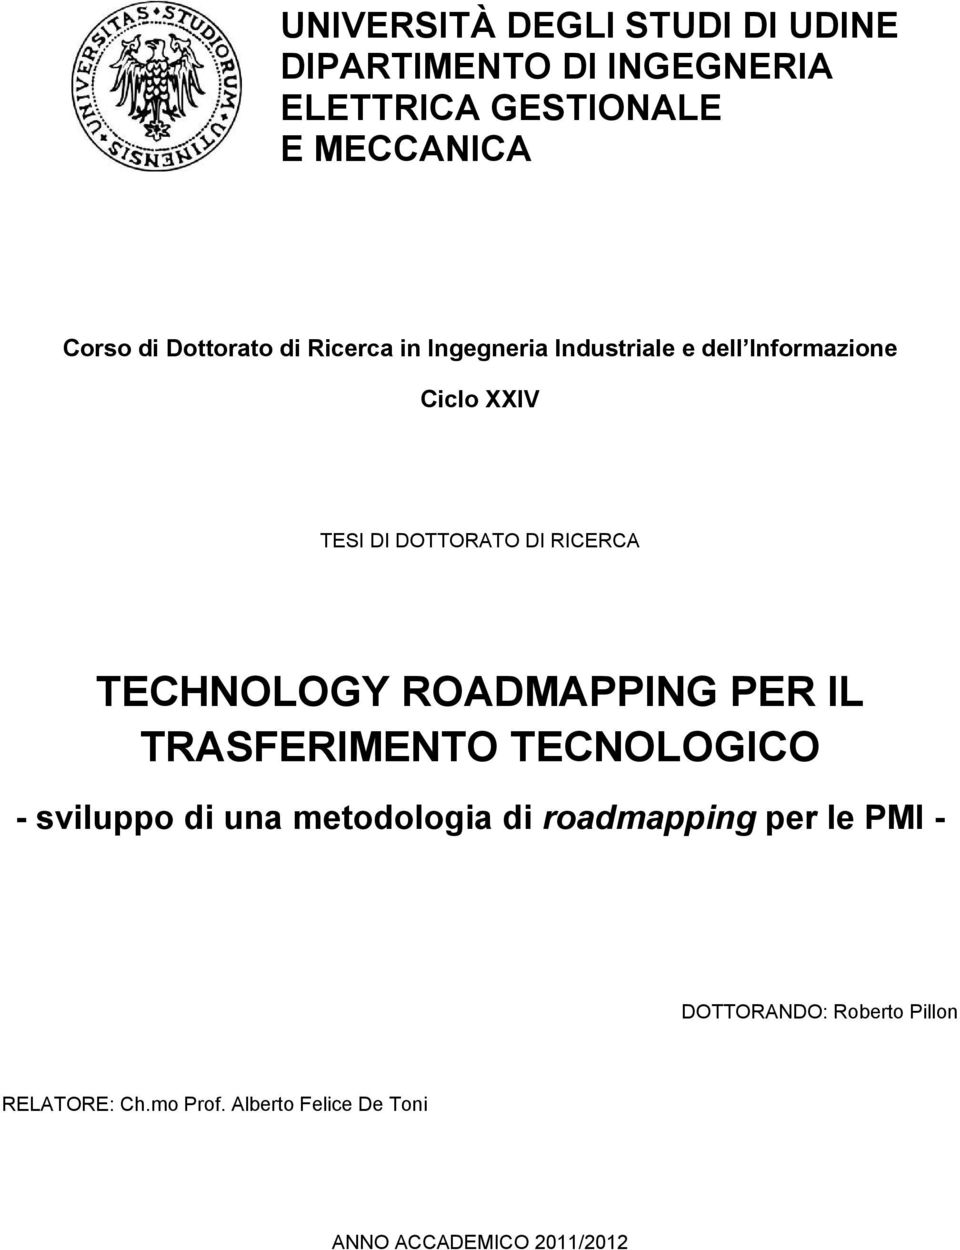 RICERCA TECHNOLOGY ROADMAPPING PER IL TRASFERIMENTO TECNOLOGICO - sviluppo di una metodologia di